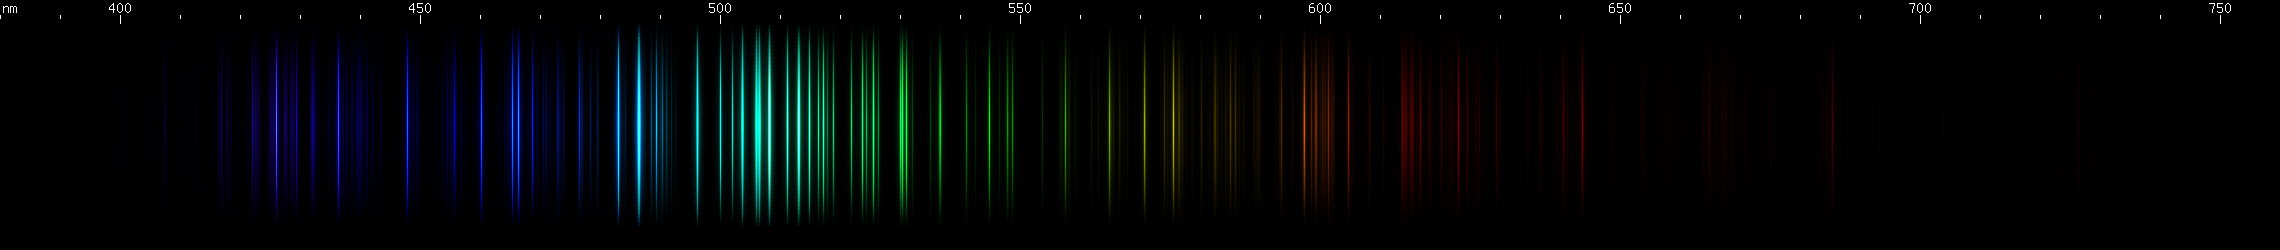 Spectral Lines of Tellurium